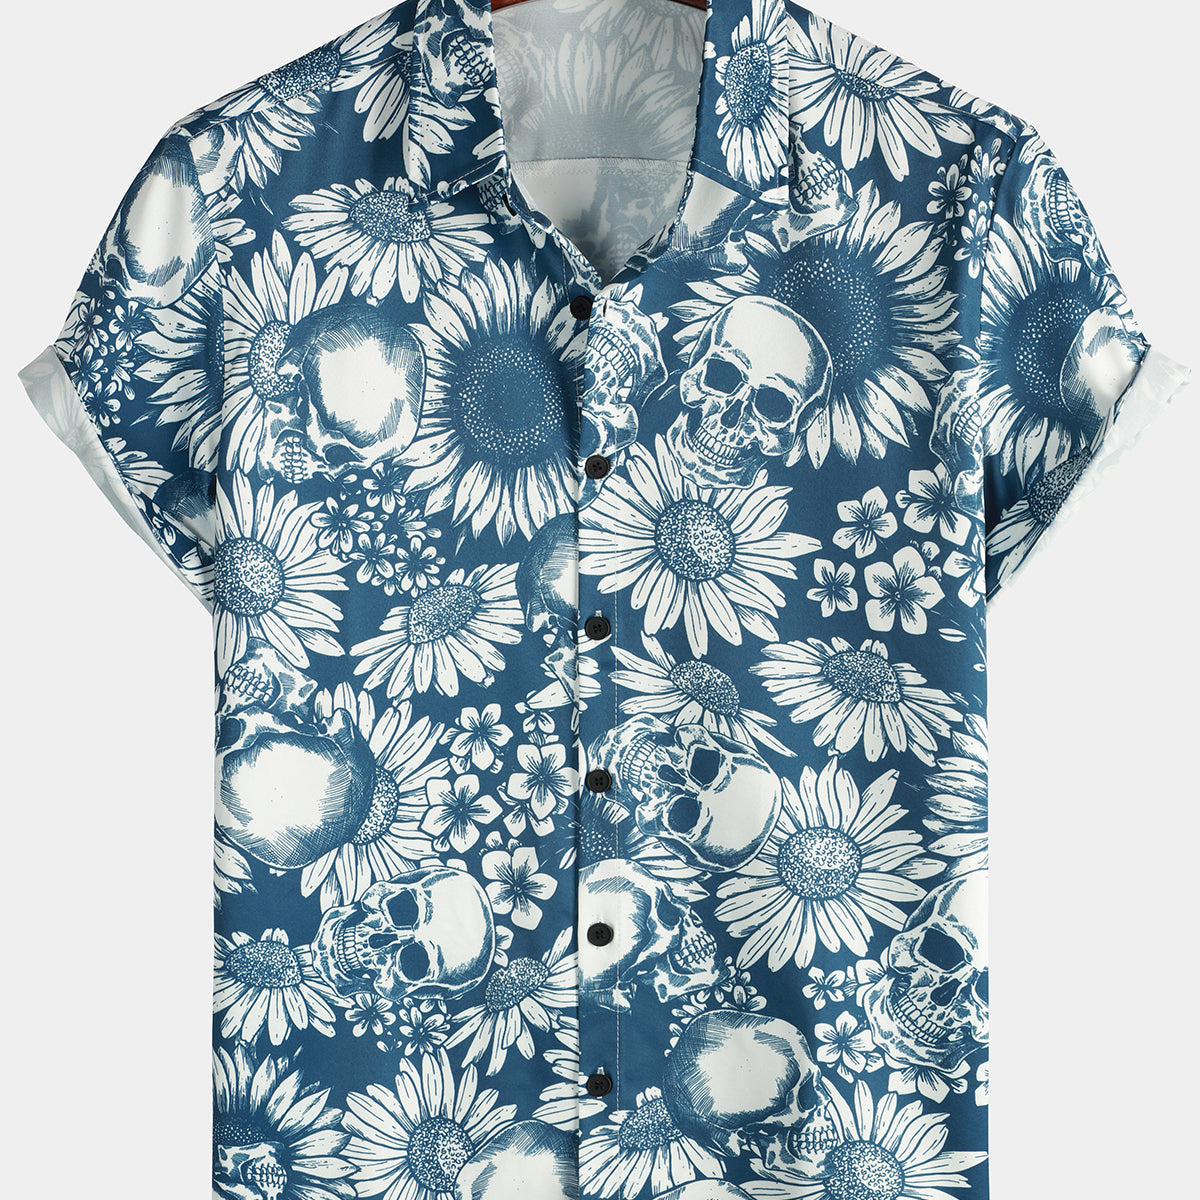 Men's Skull Sunflower Button Up Short Sleeve Art Flower Blue Rock and Roll Hawaiian Shirt